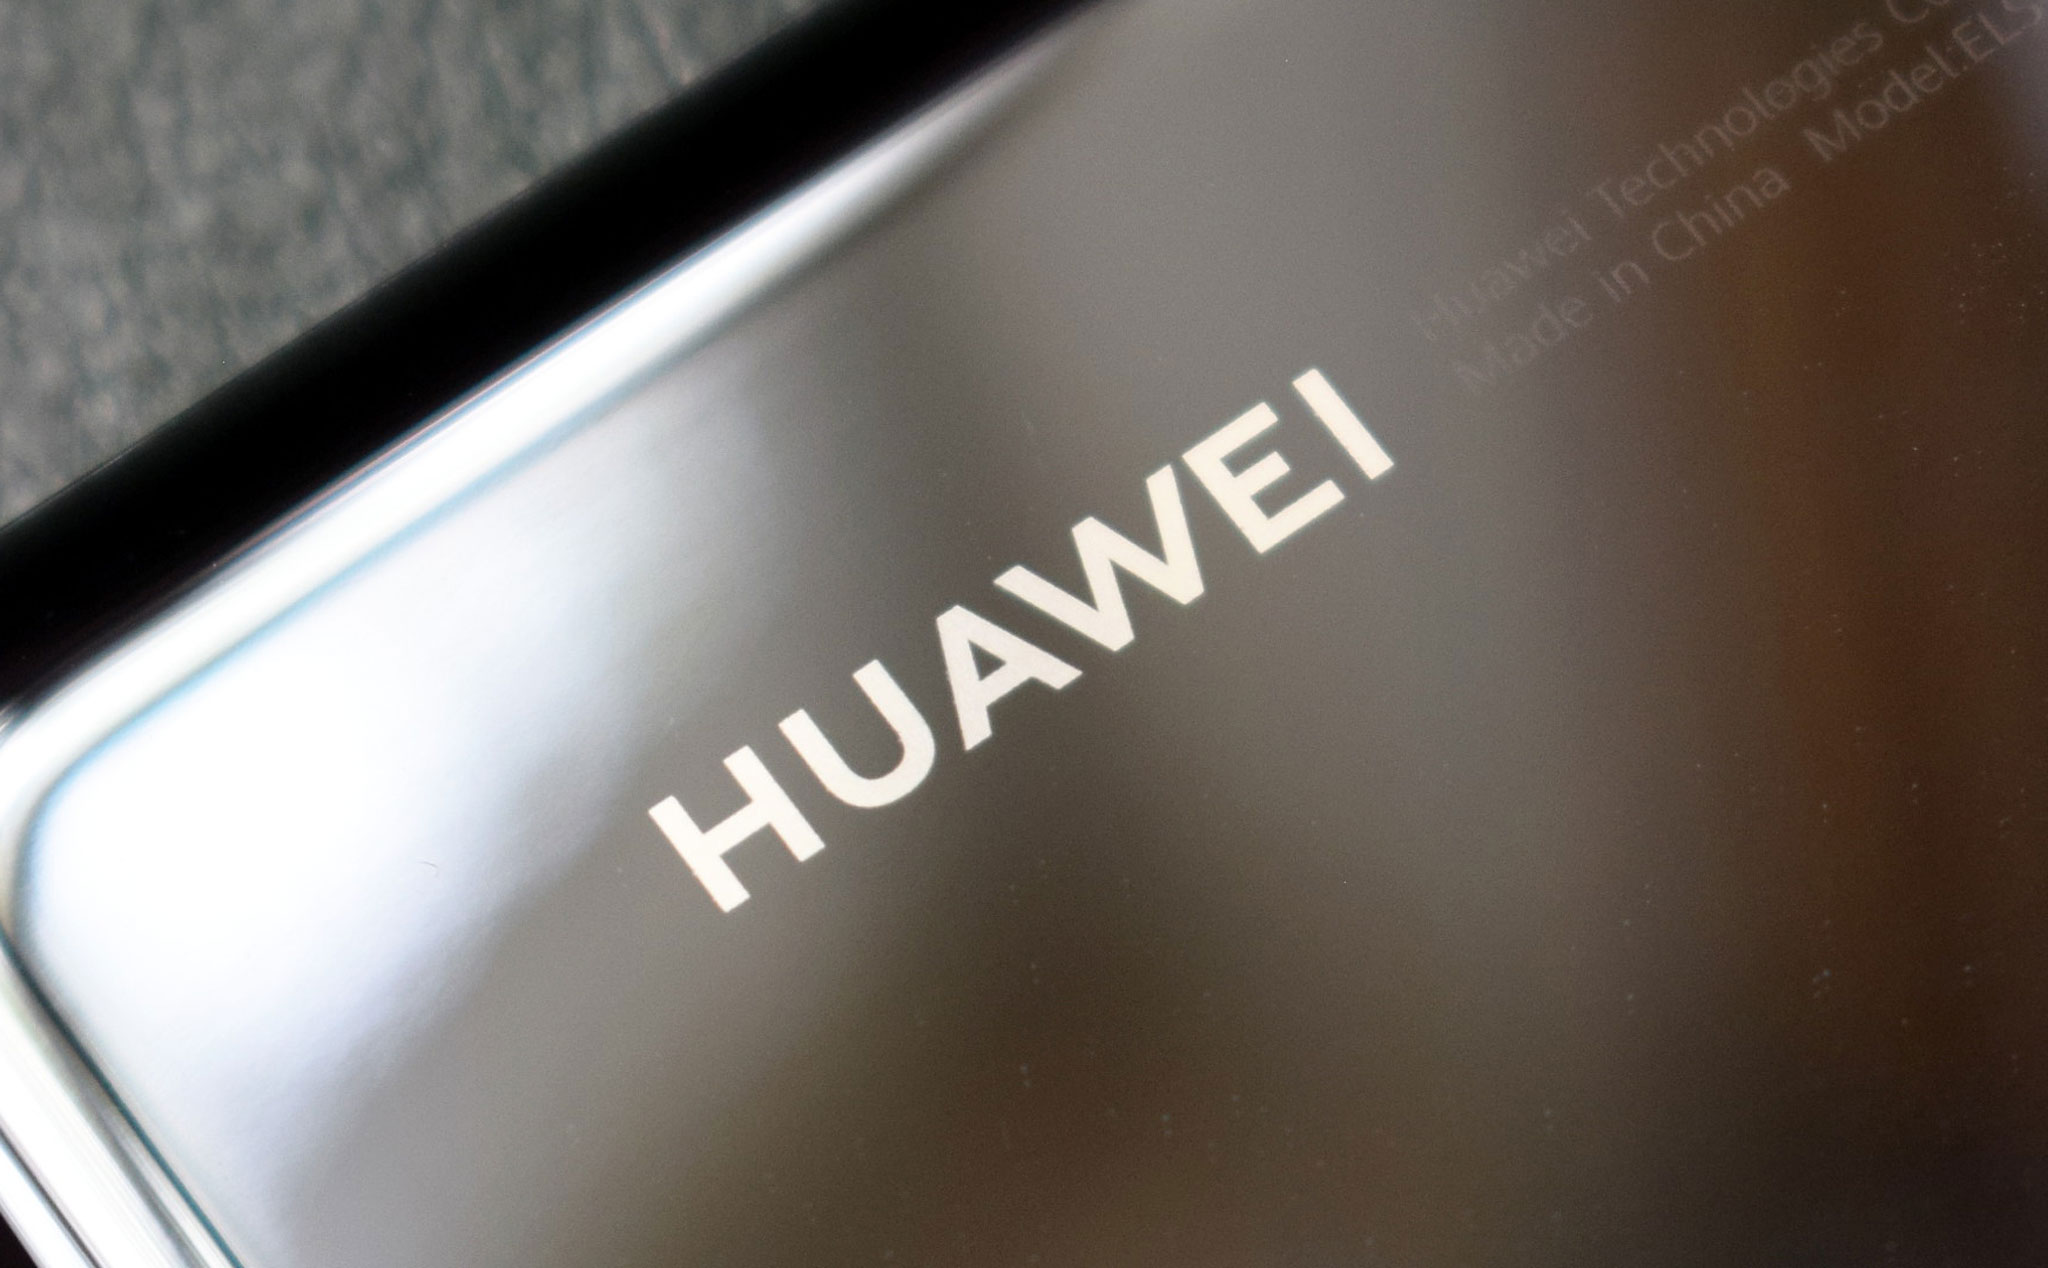 Cập nhật về Huawei: bằng sáng chế và logo HarmonyOS mới, không có kế hoạch B cho chip Kirin